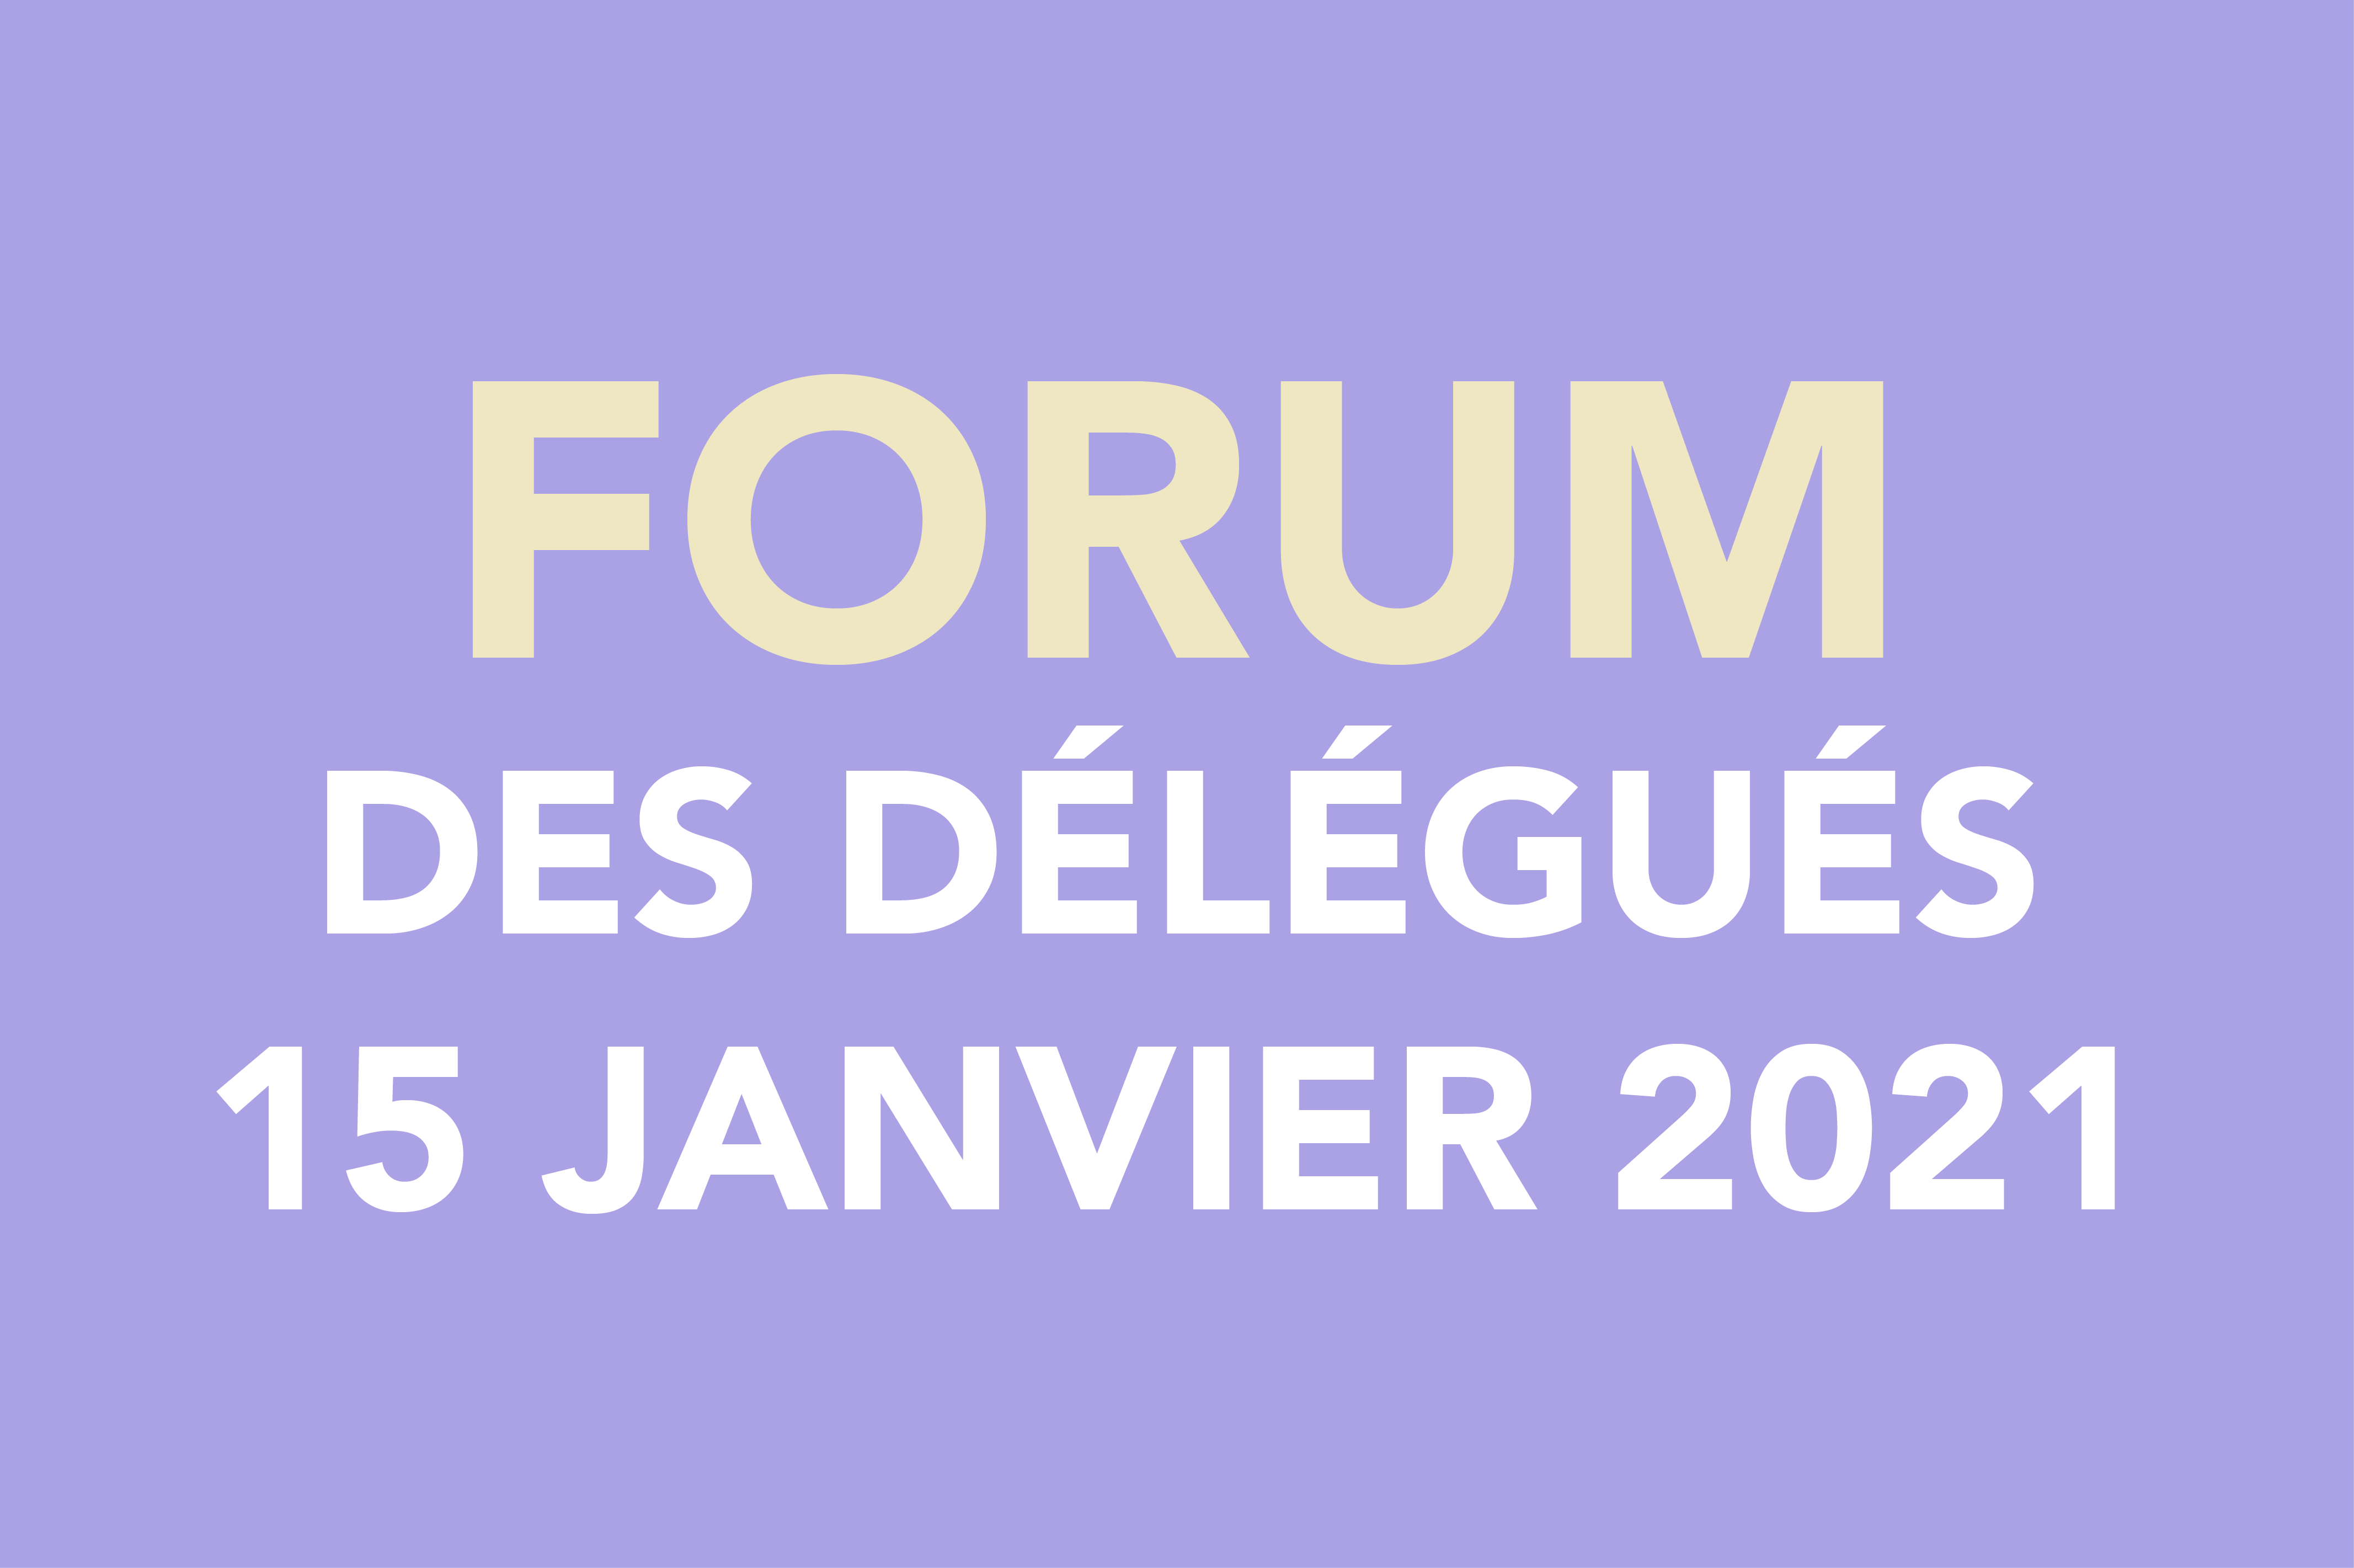 You are currently viewing Forum des délégués